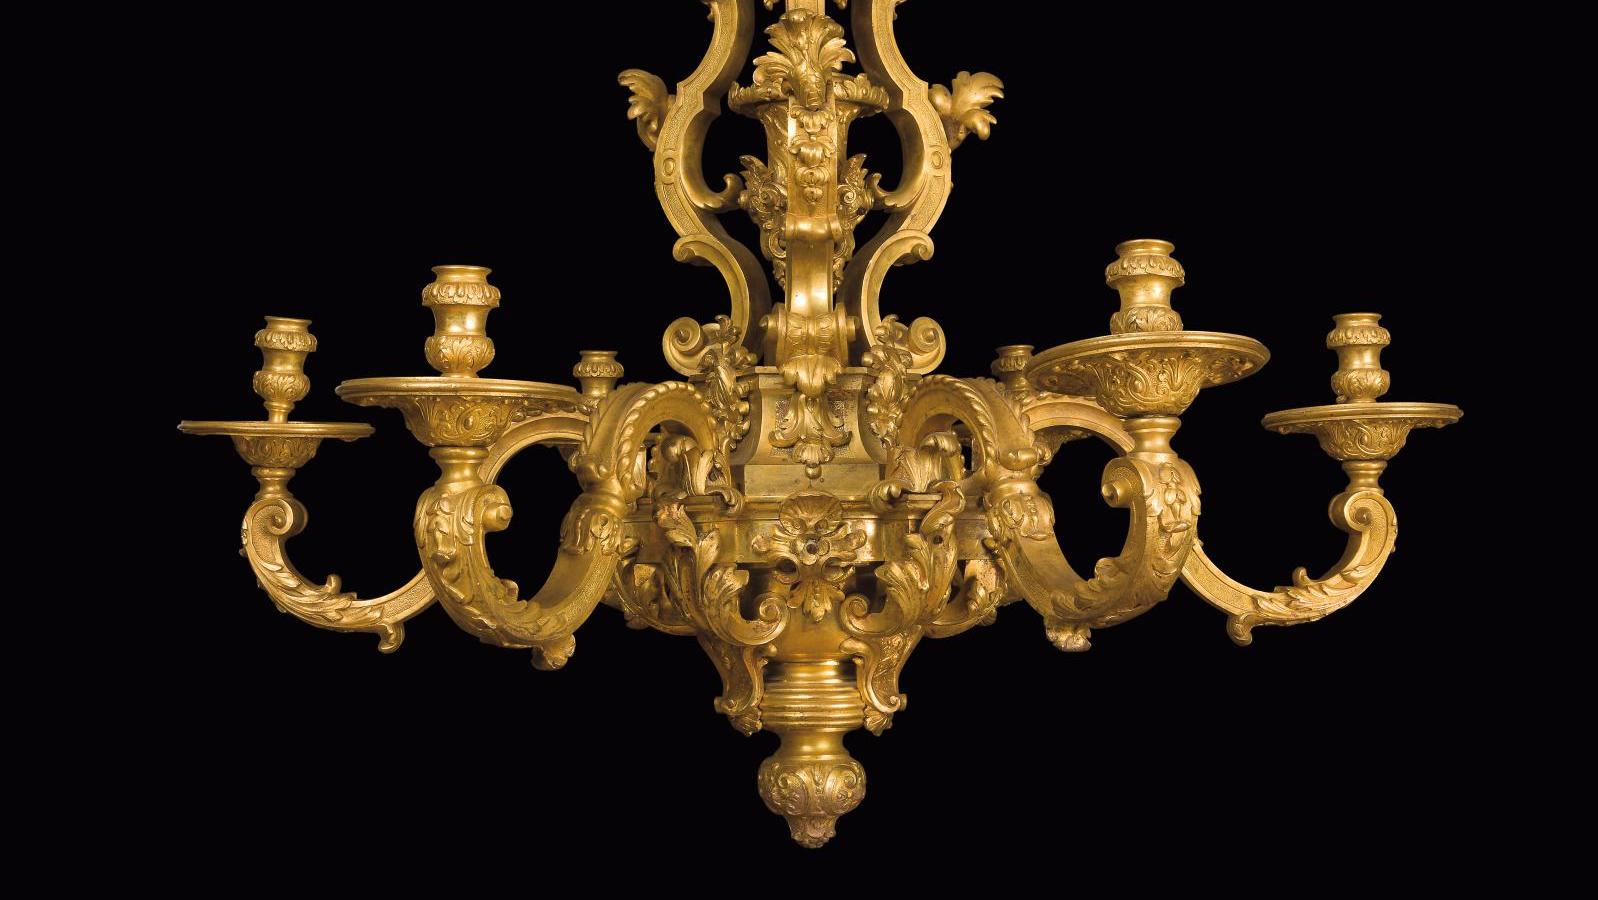 Lustre en bronze doré à six lumières et décor asymétrique de feuillages, agrafes... Un lustre d'André-Charles Boulle